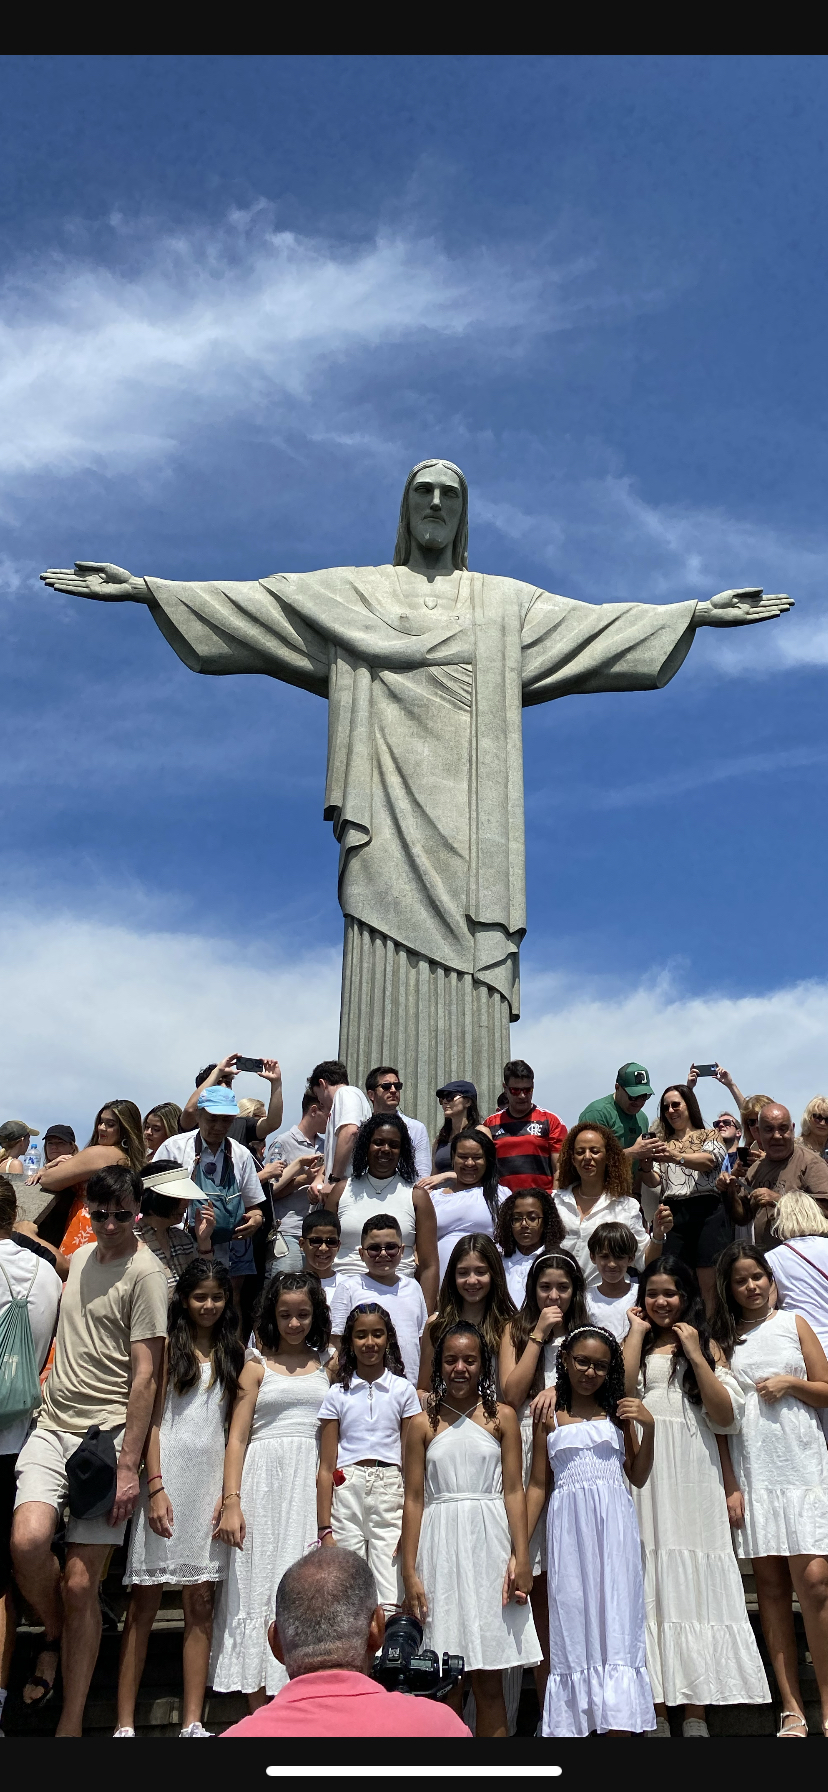 里约的耶稣山闻名于世。